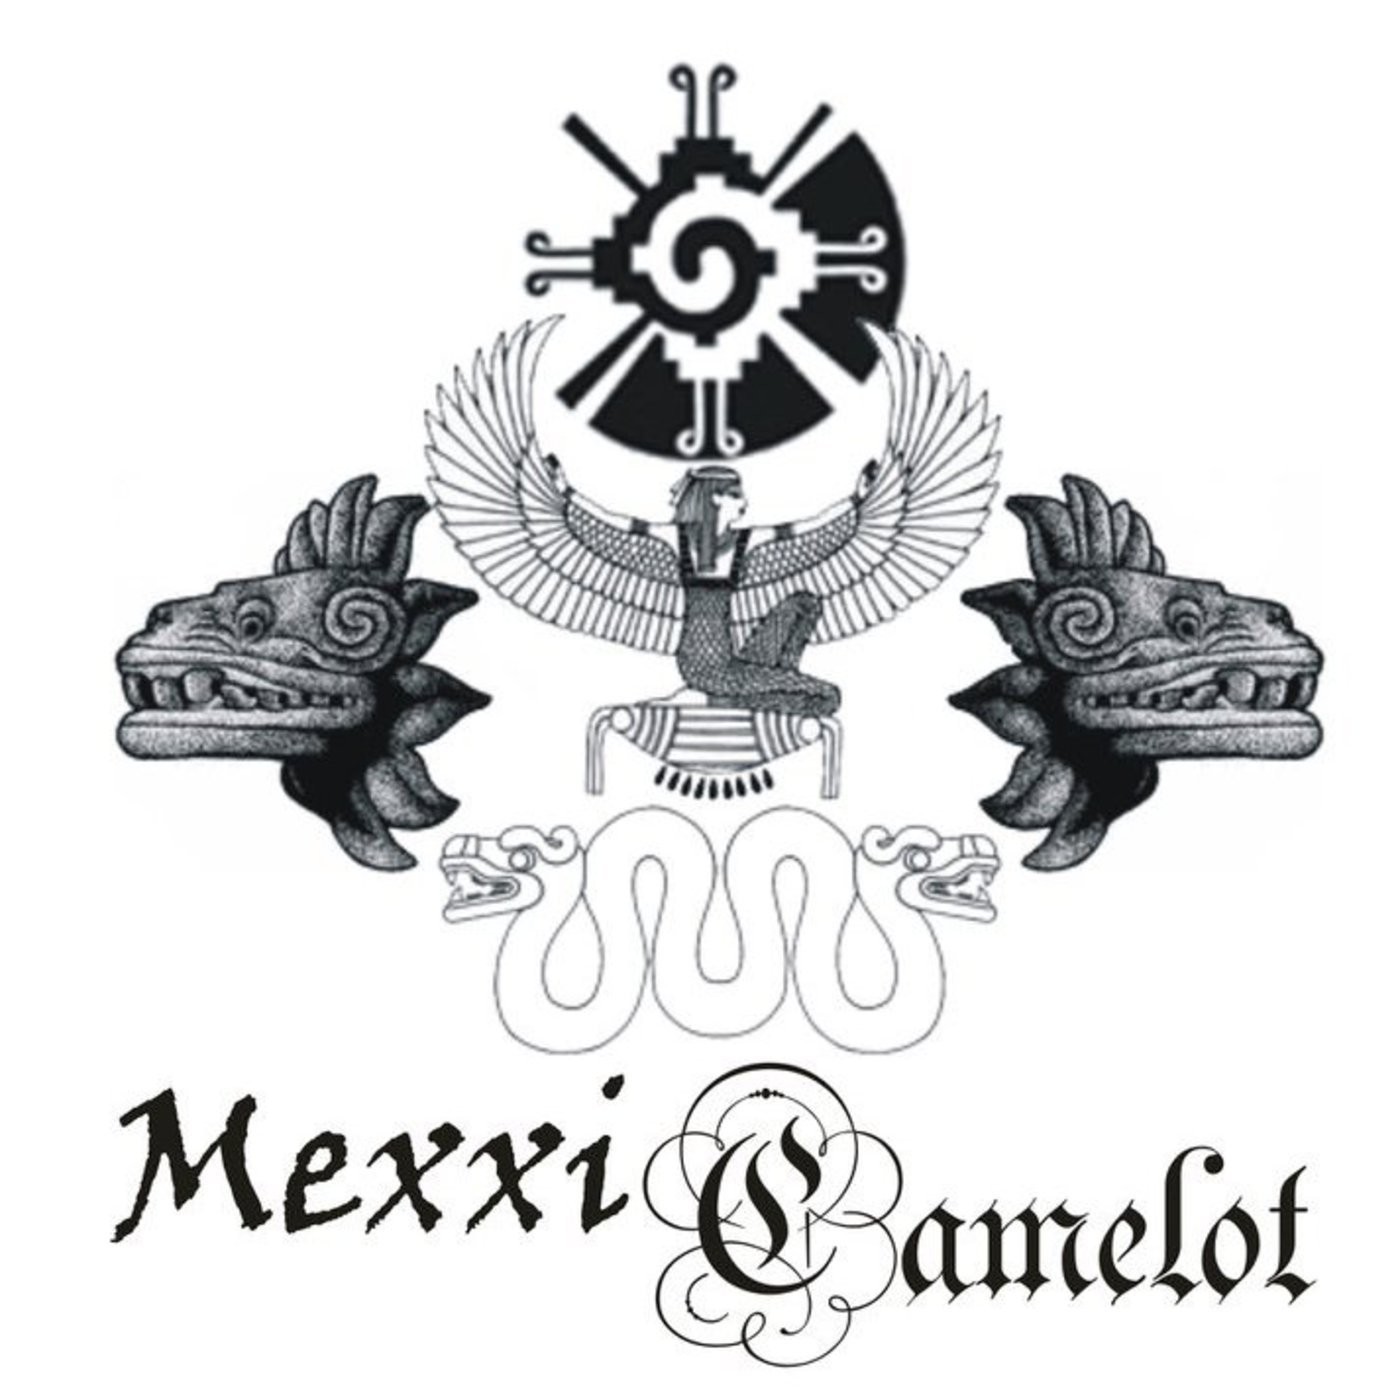 Podcast de Mexxicamelot